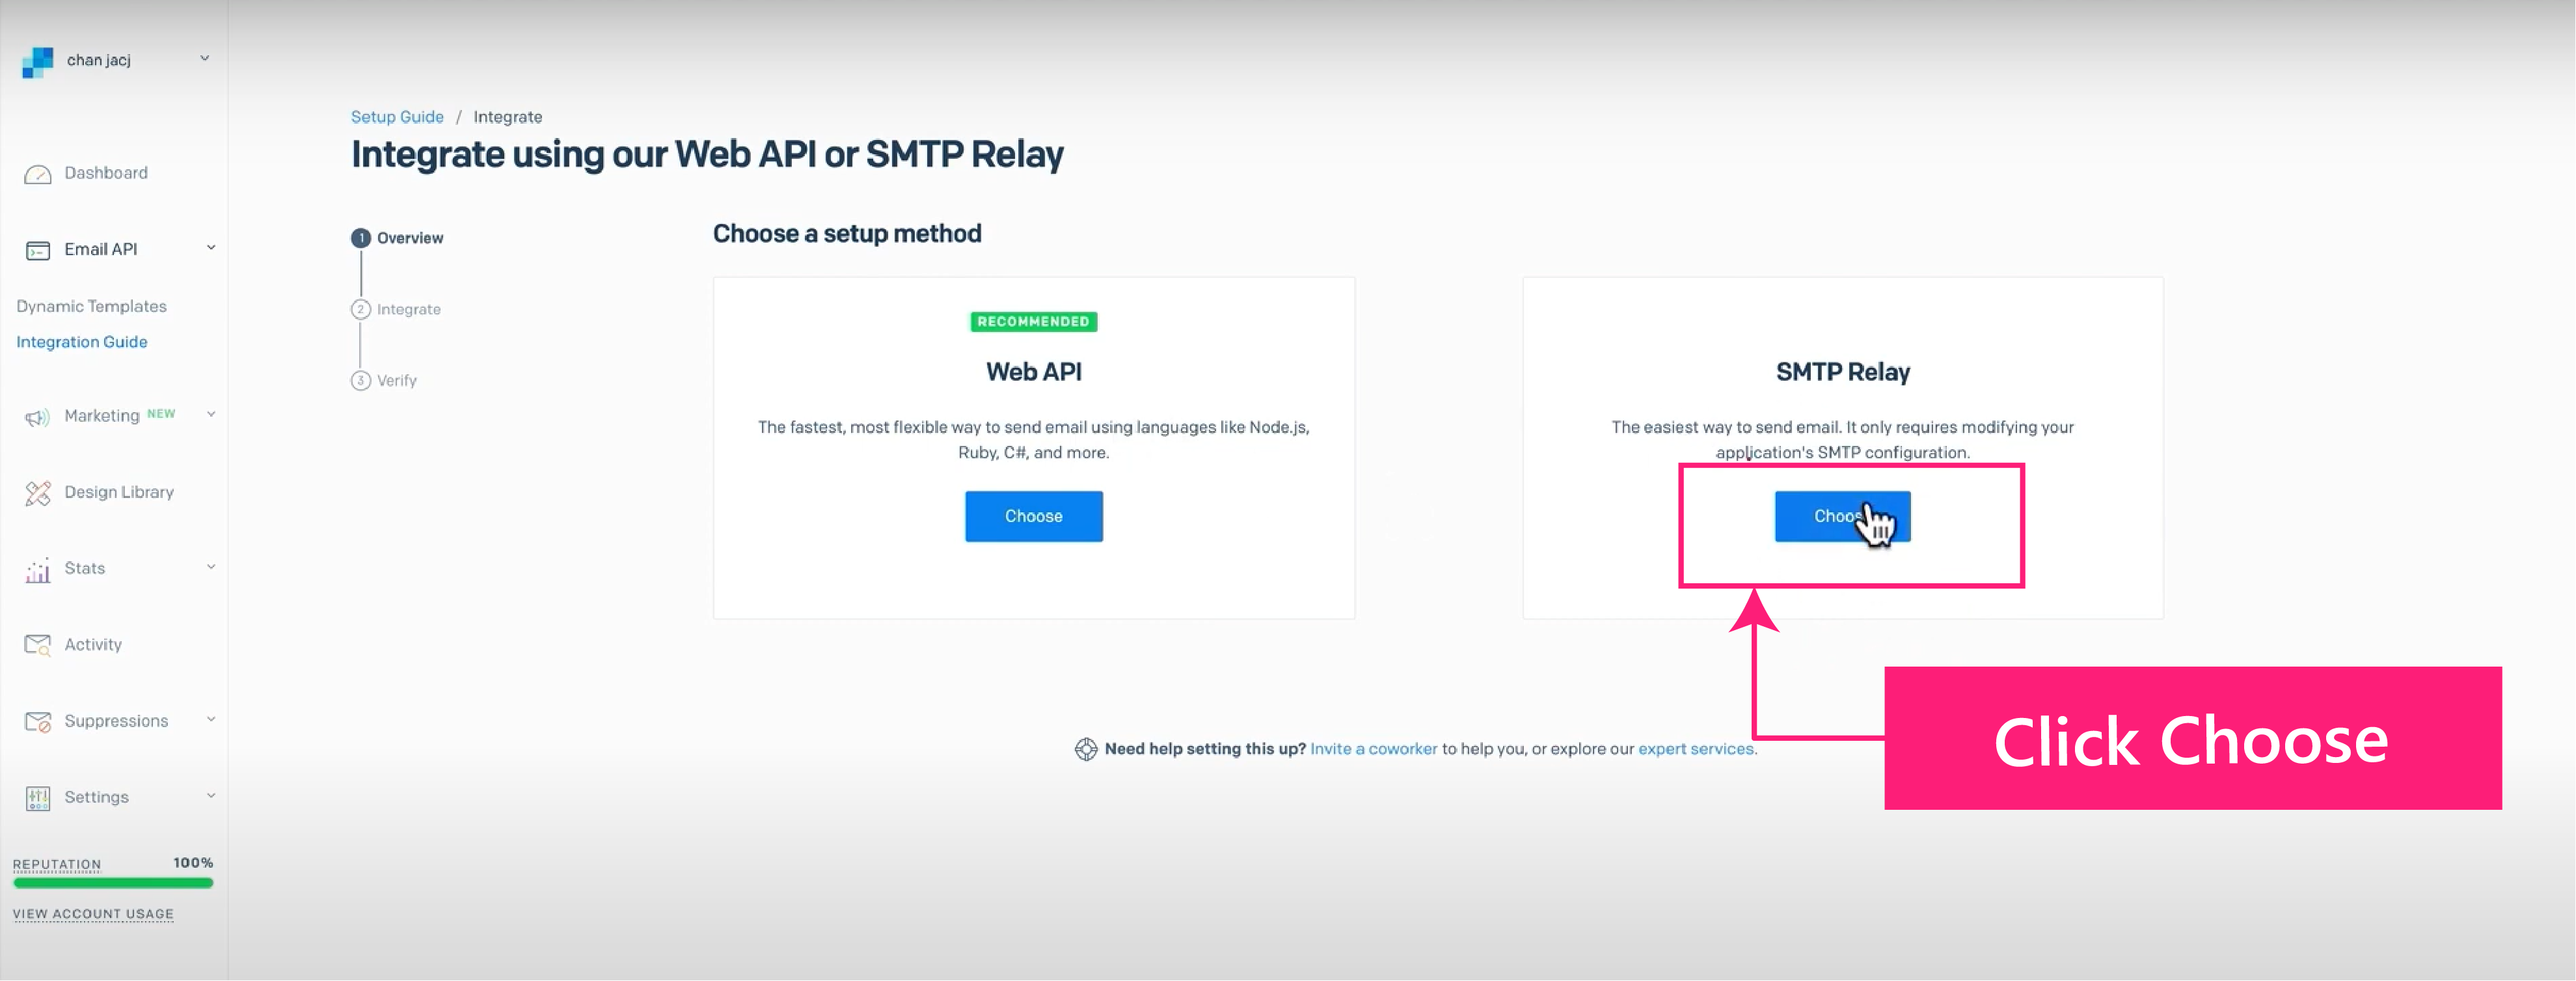 外贸网站搭建教程 - SendGrid邮件服务器SMTP Relay